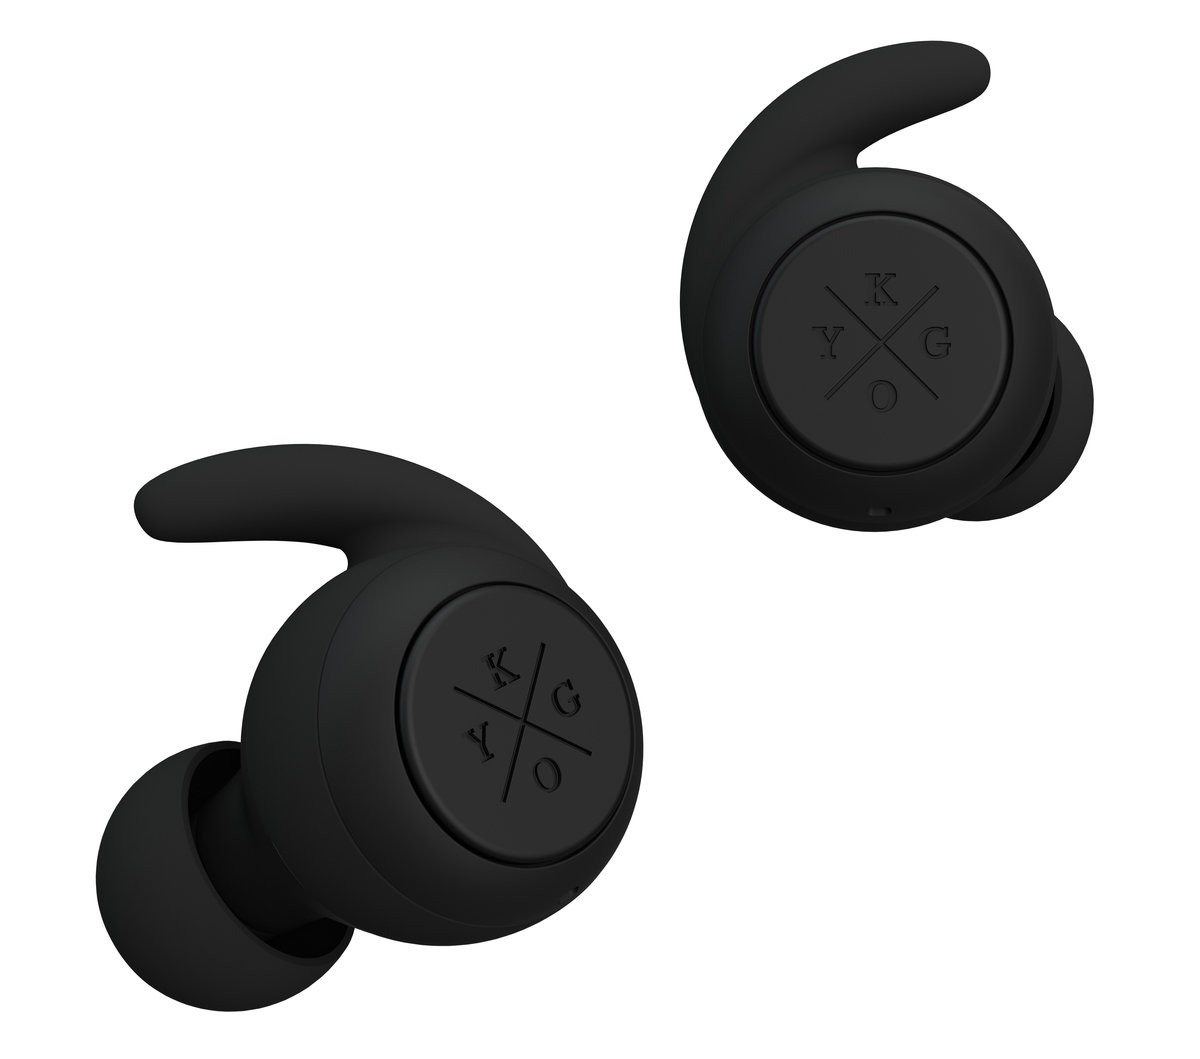 Słuchawki Kygo E7/900 BT front czarne